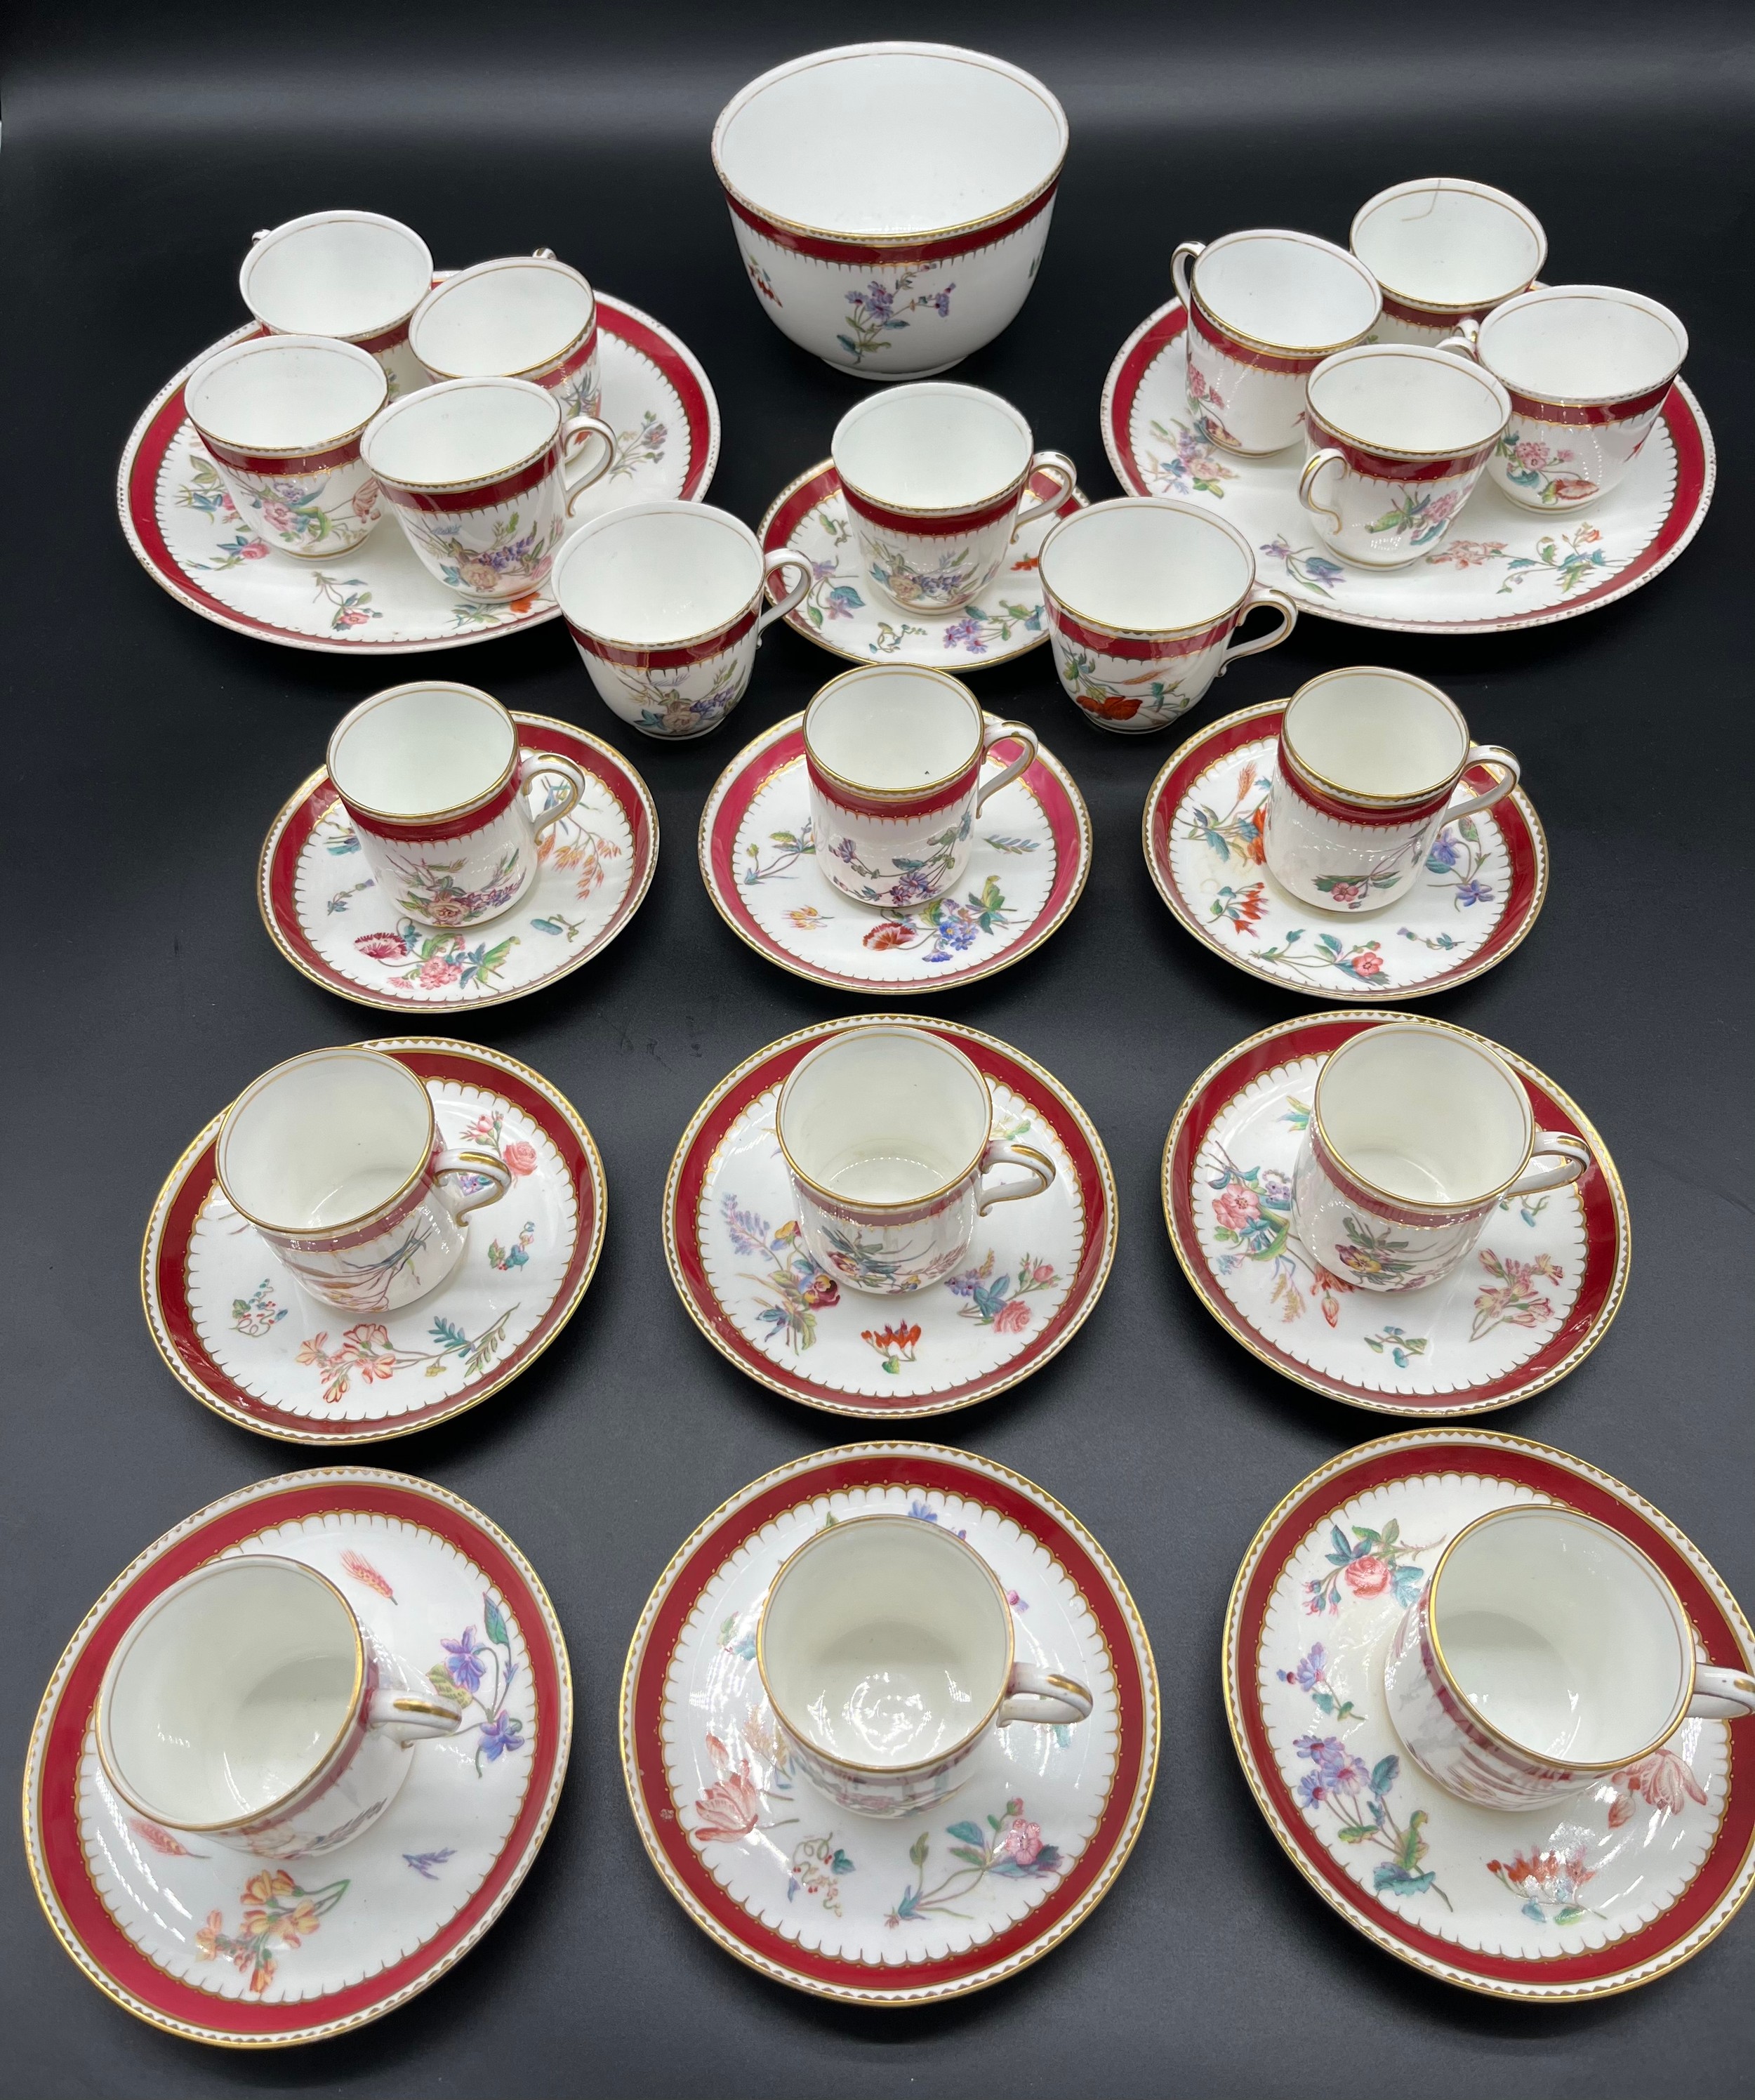 A 33 Piece Copeland floral design tea/ coffee set.